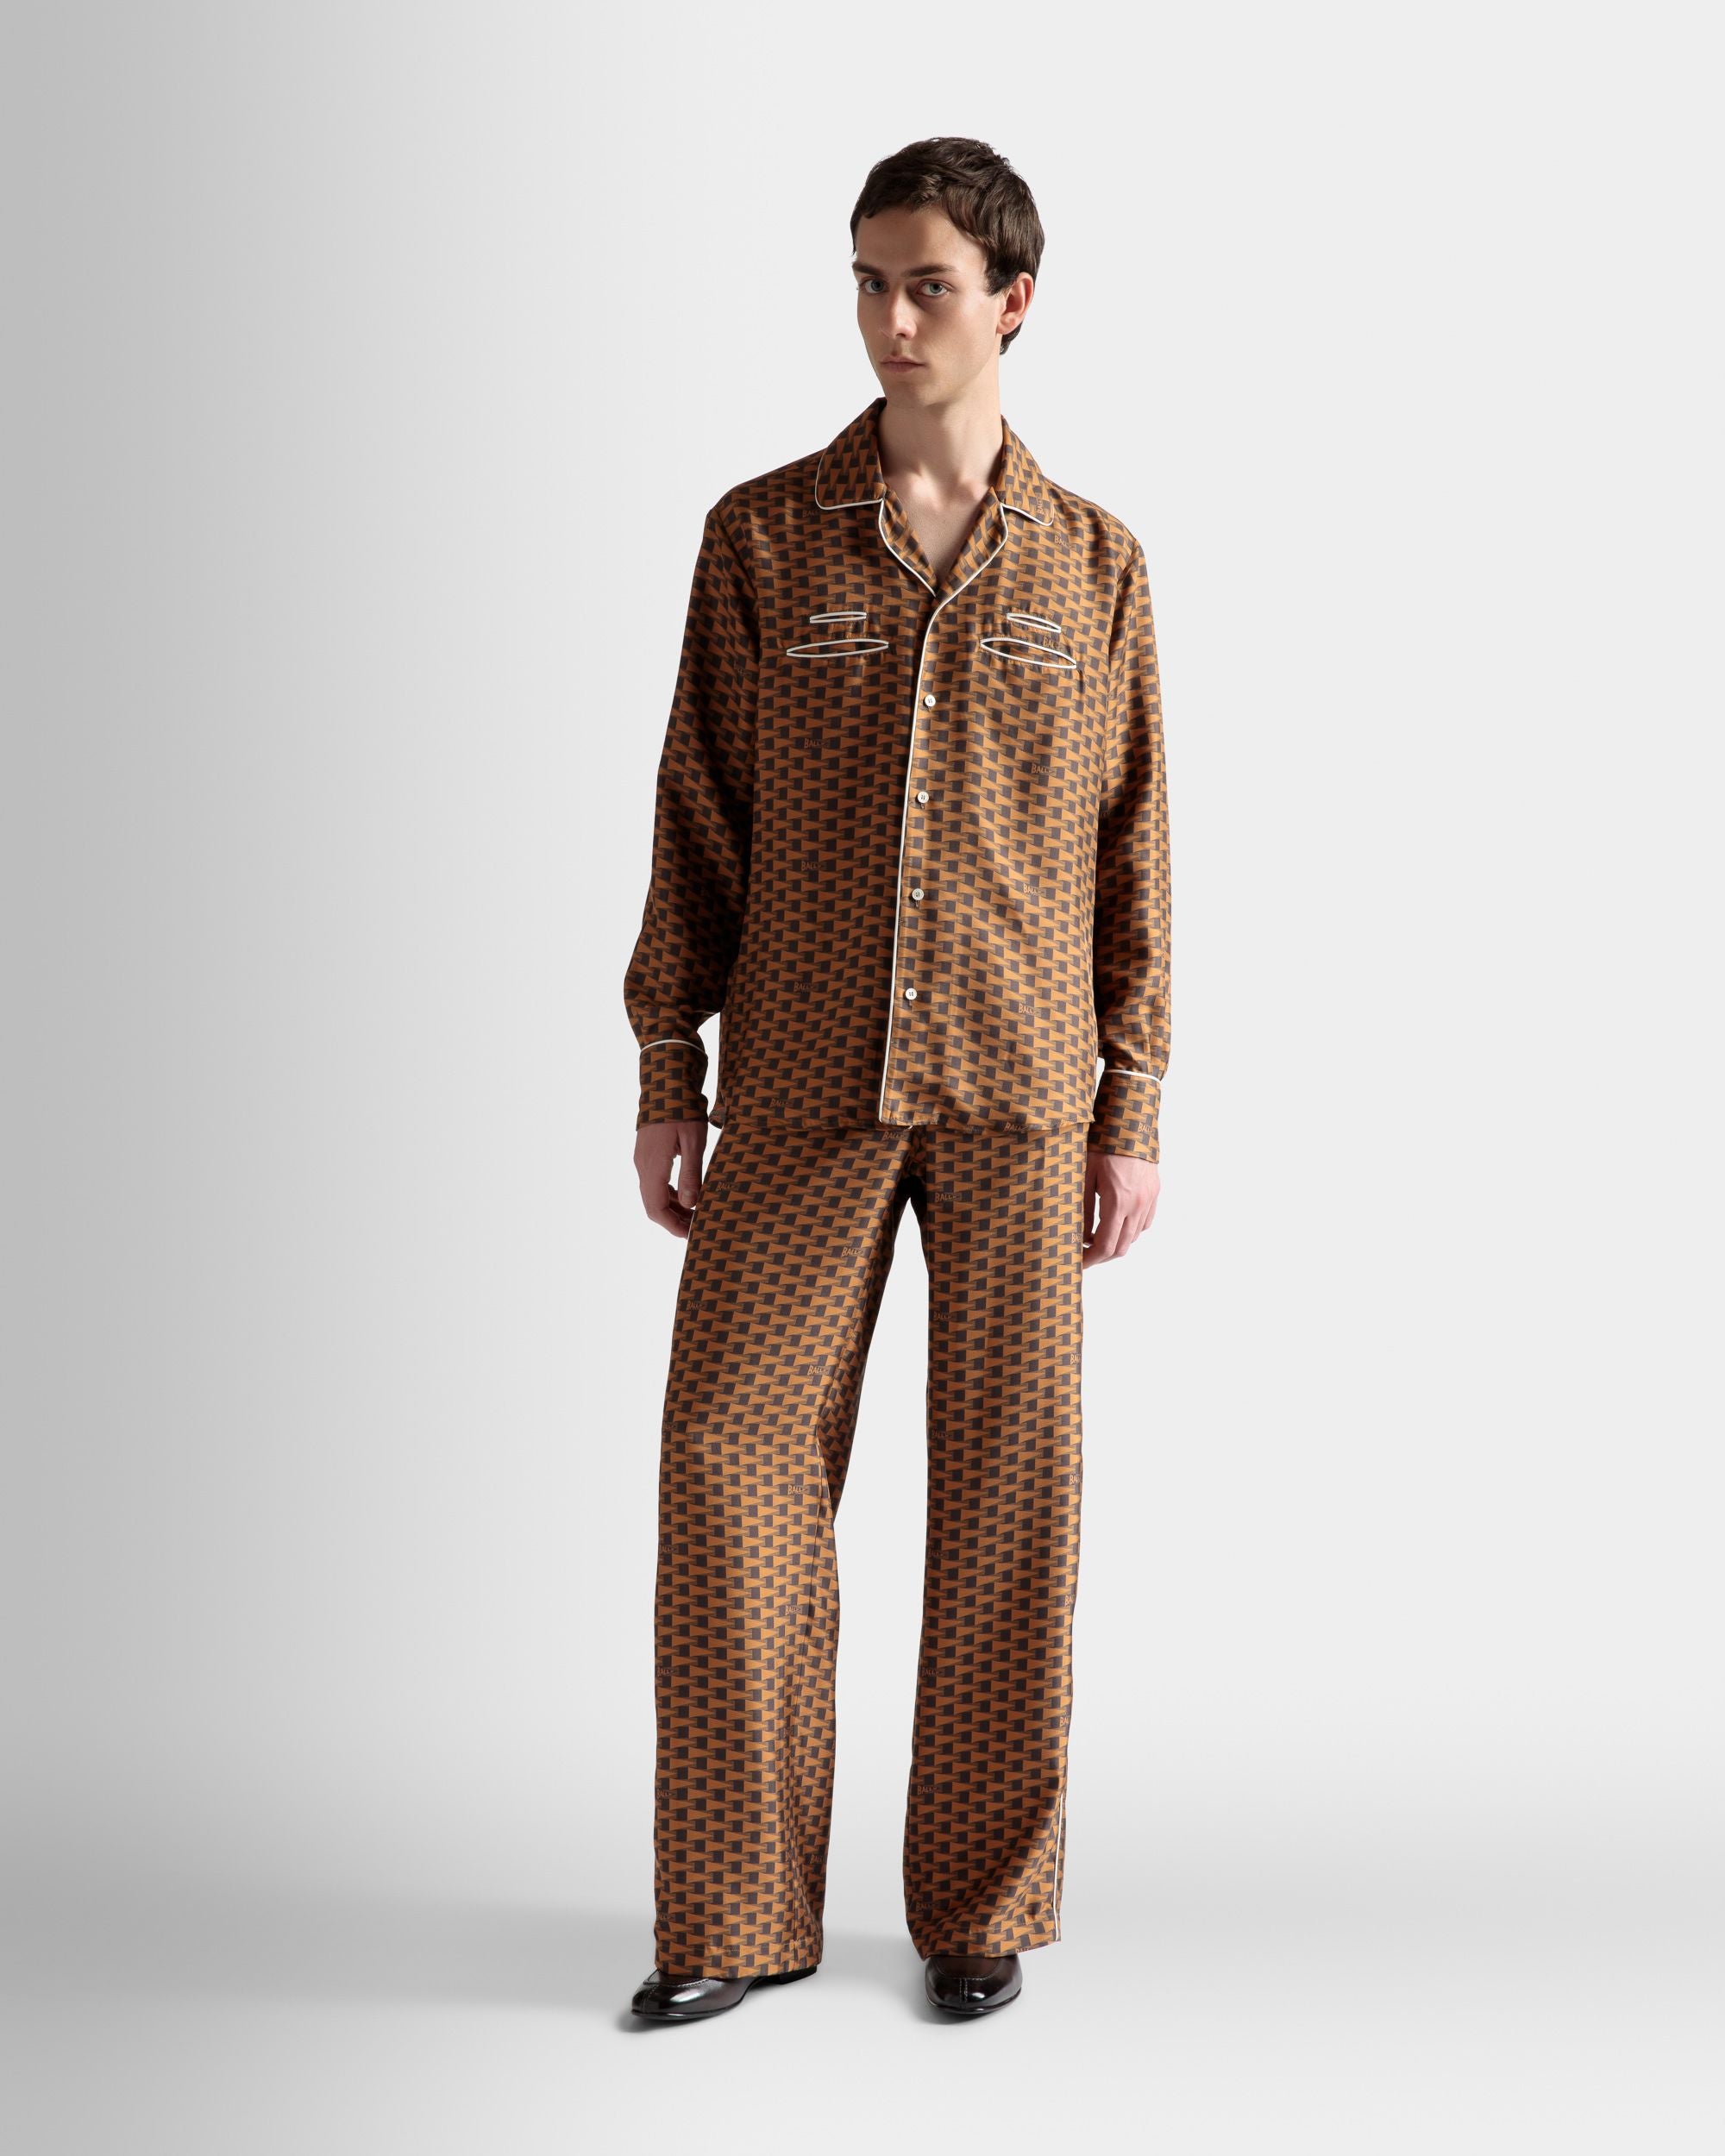 Hemd mit Pennant-Print | Herrenhemd | Braune Seide | Bally | Model getragen Vorderseite